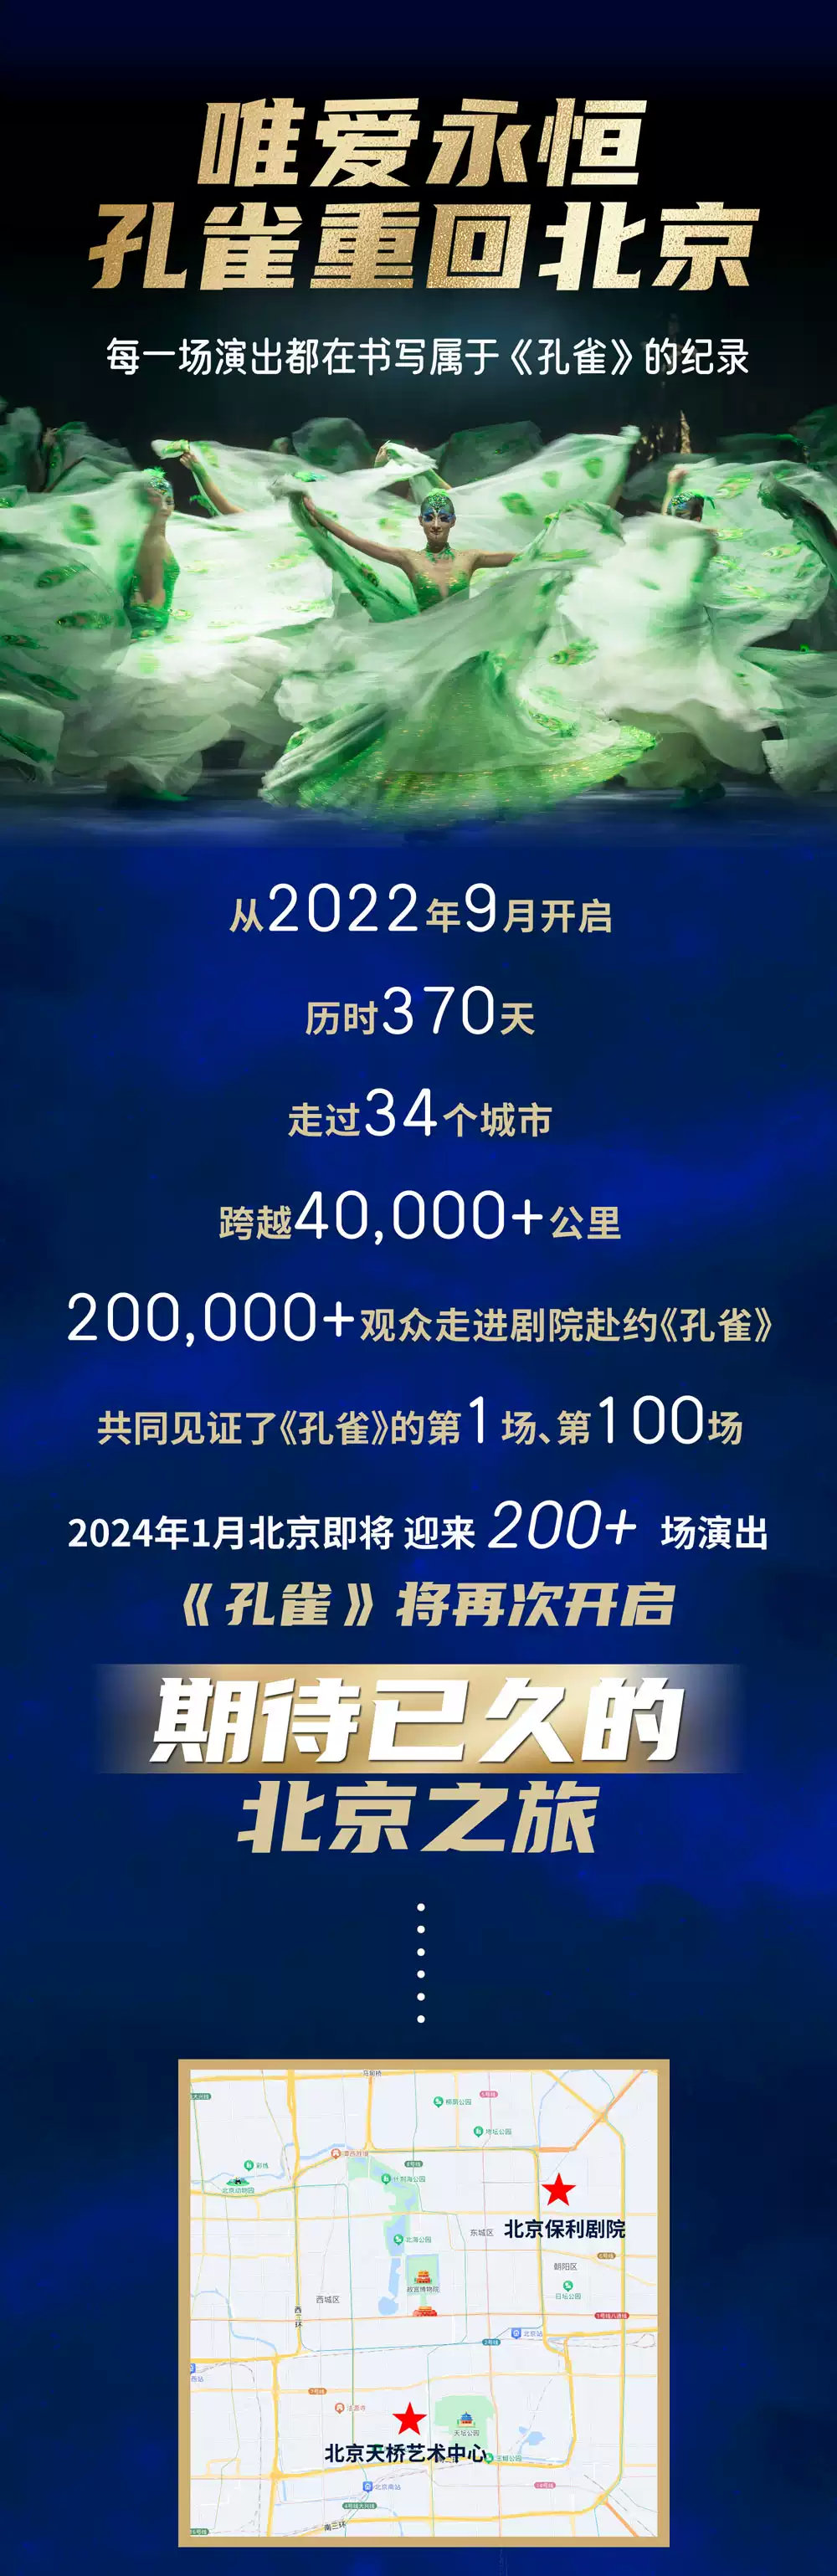 楊麗萍舞劇《孔雀》北京站2024巡演時間+地點+門票價格+演出亮點